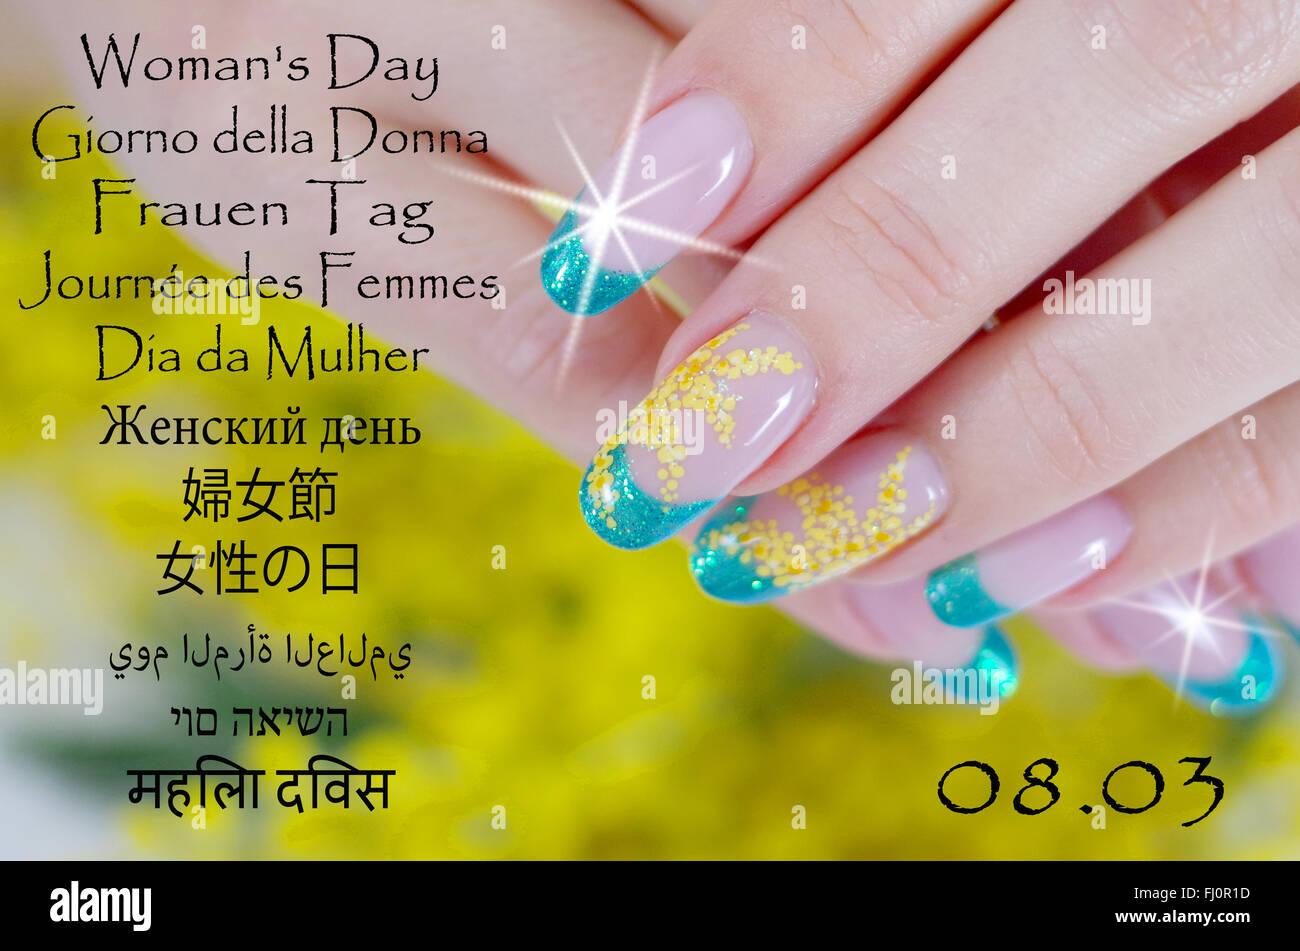 Las uñas decoradas con un hermoso diseño floral para el día de la mujer Foto de stock